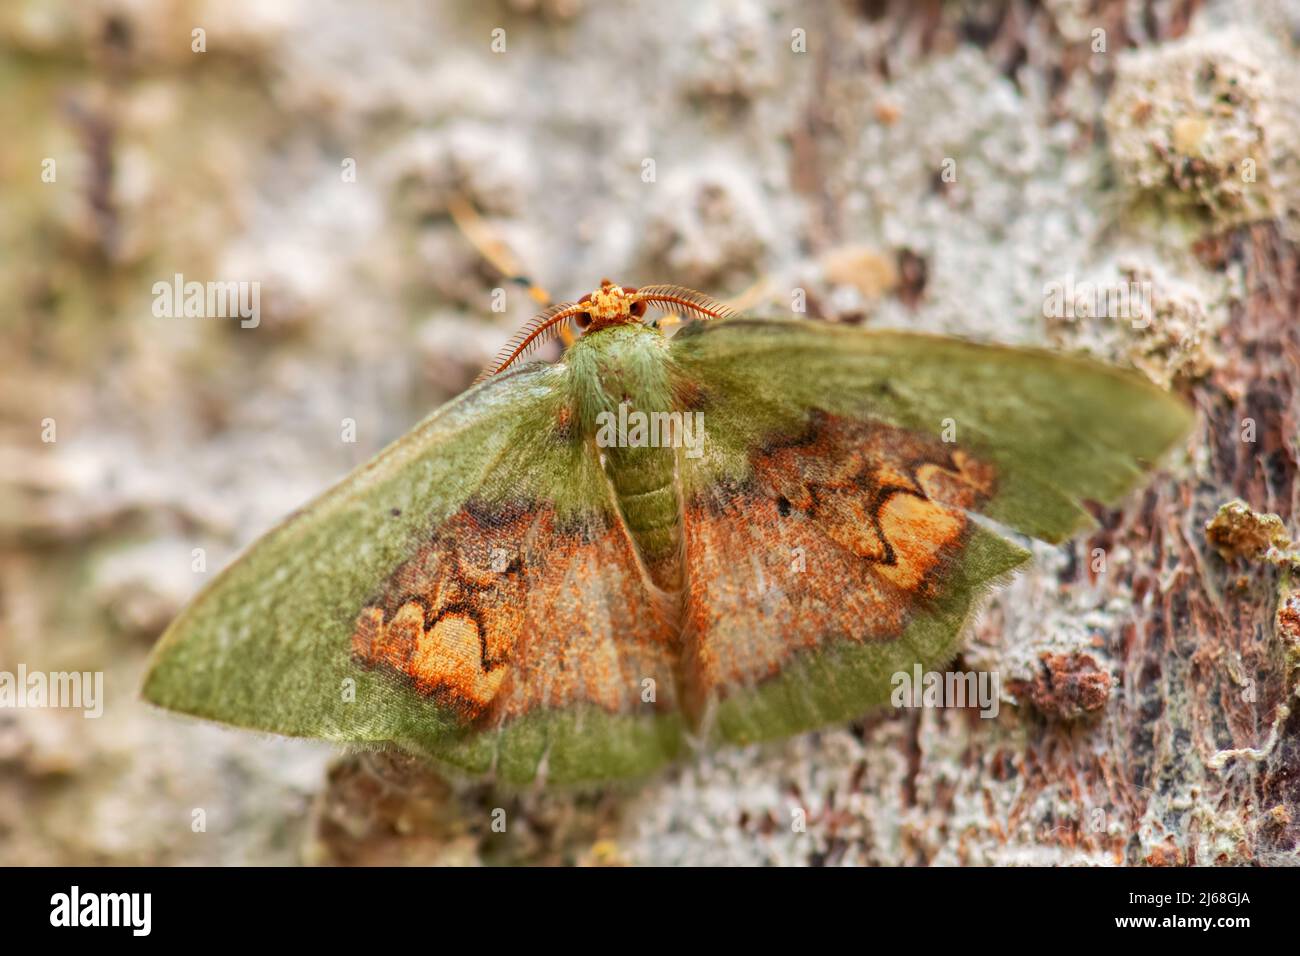 Geometer Moth - Pyrochlora rhanis, magnifique papillon coloré des forêts d'Amérique du Sud, pentes orientales des Andes, Wild Sumaco Lodge, Equateur. Banque D'Images